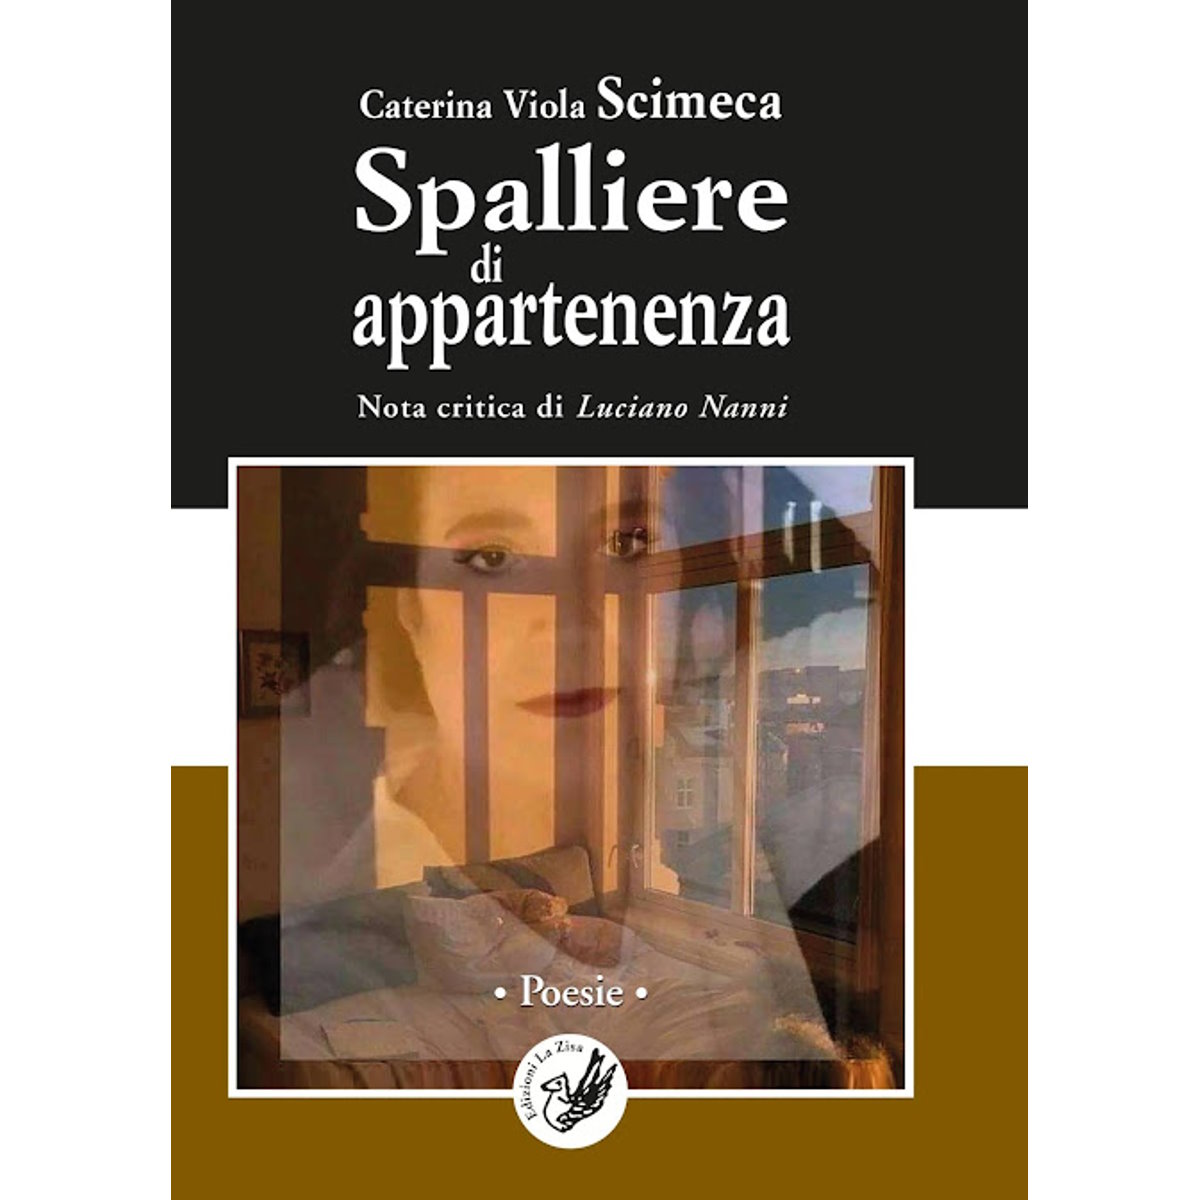 In libreria: Caterina Viola Scimeca, “Spalliere di appartenenza”, Nota critica di Luciano Nanni, Edizioni La Zisa